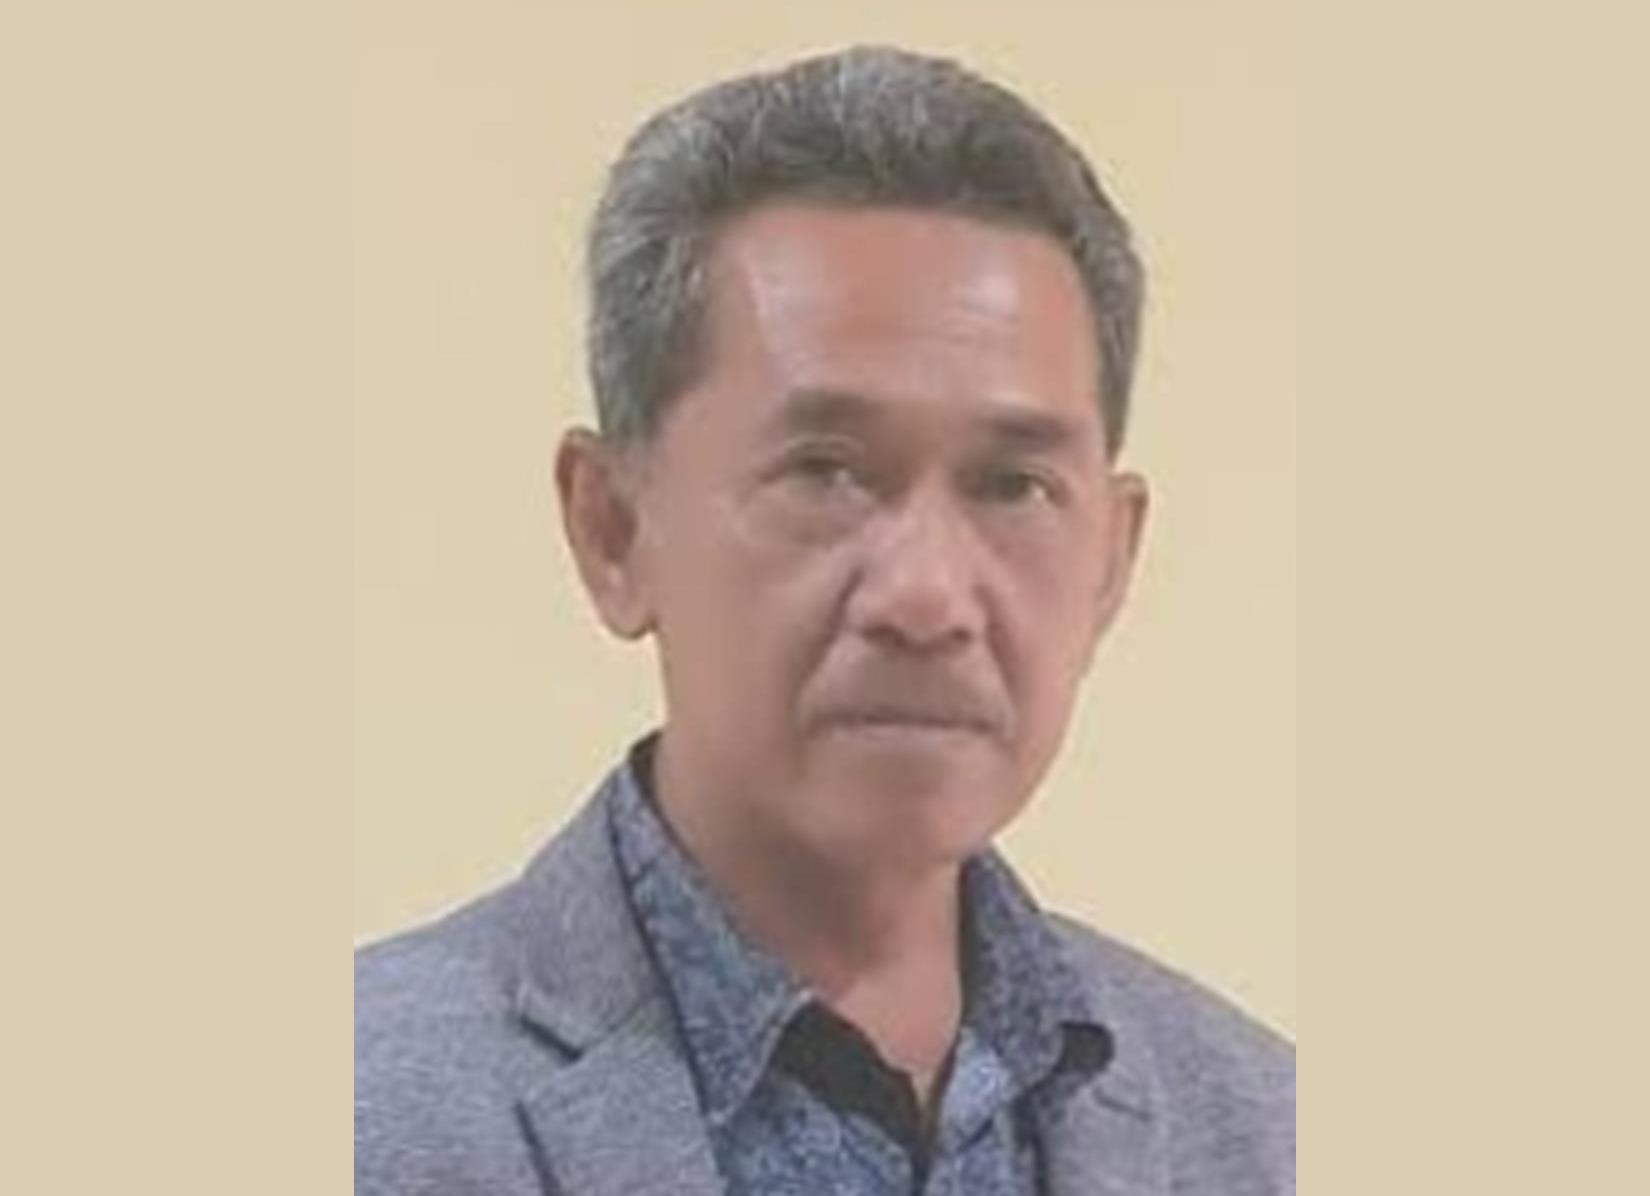 PT TUN Gugurkan SK Penetapan Wakil Bupati Muara Enim, DPRD Ajukan Kasasi